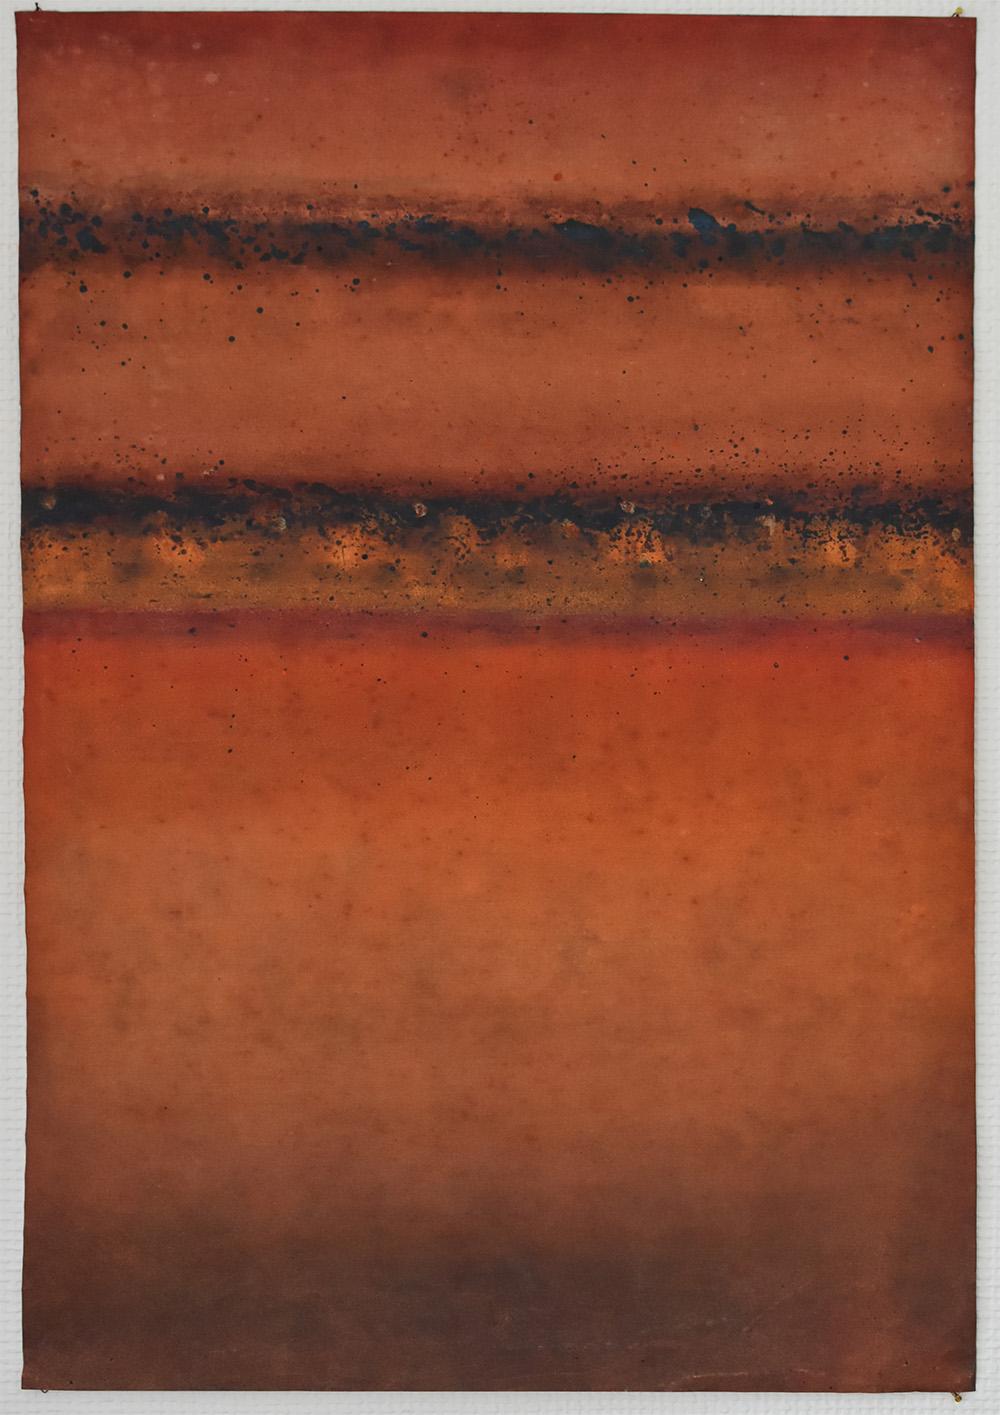 Abstract Painting Elvire Ferle - Untitled XX de Ferle - Peinture abstraite, lignes, couleurs vives, orange, rouge